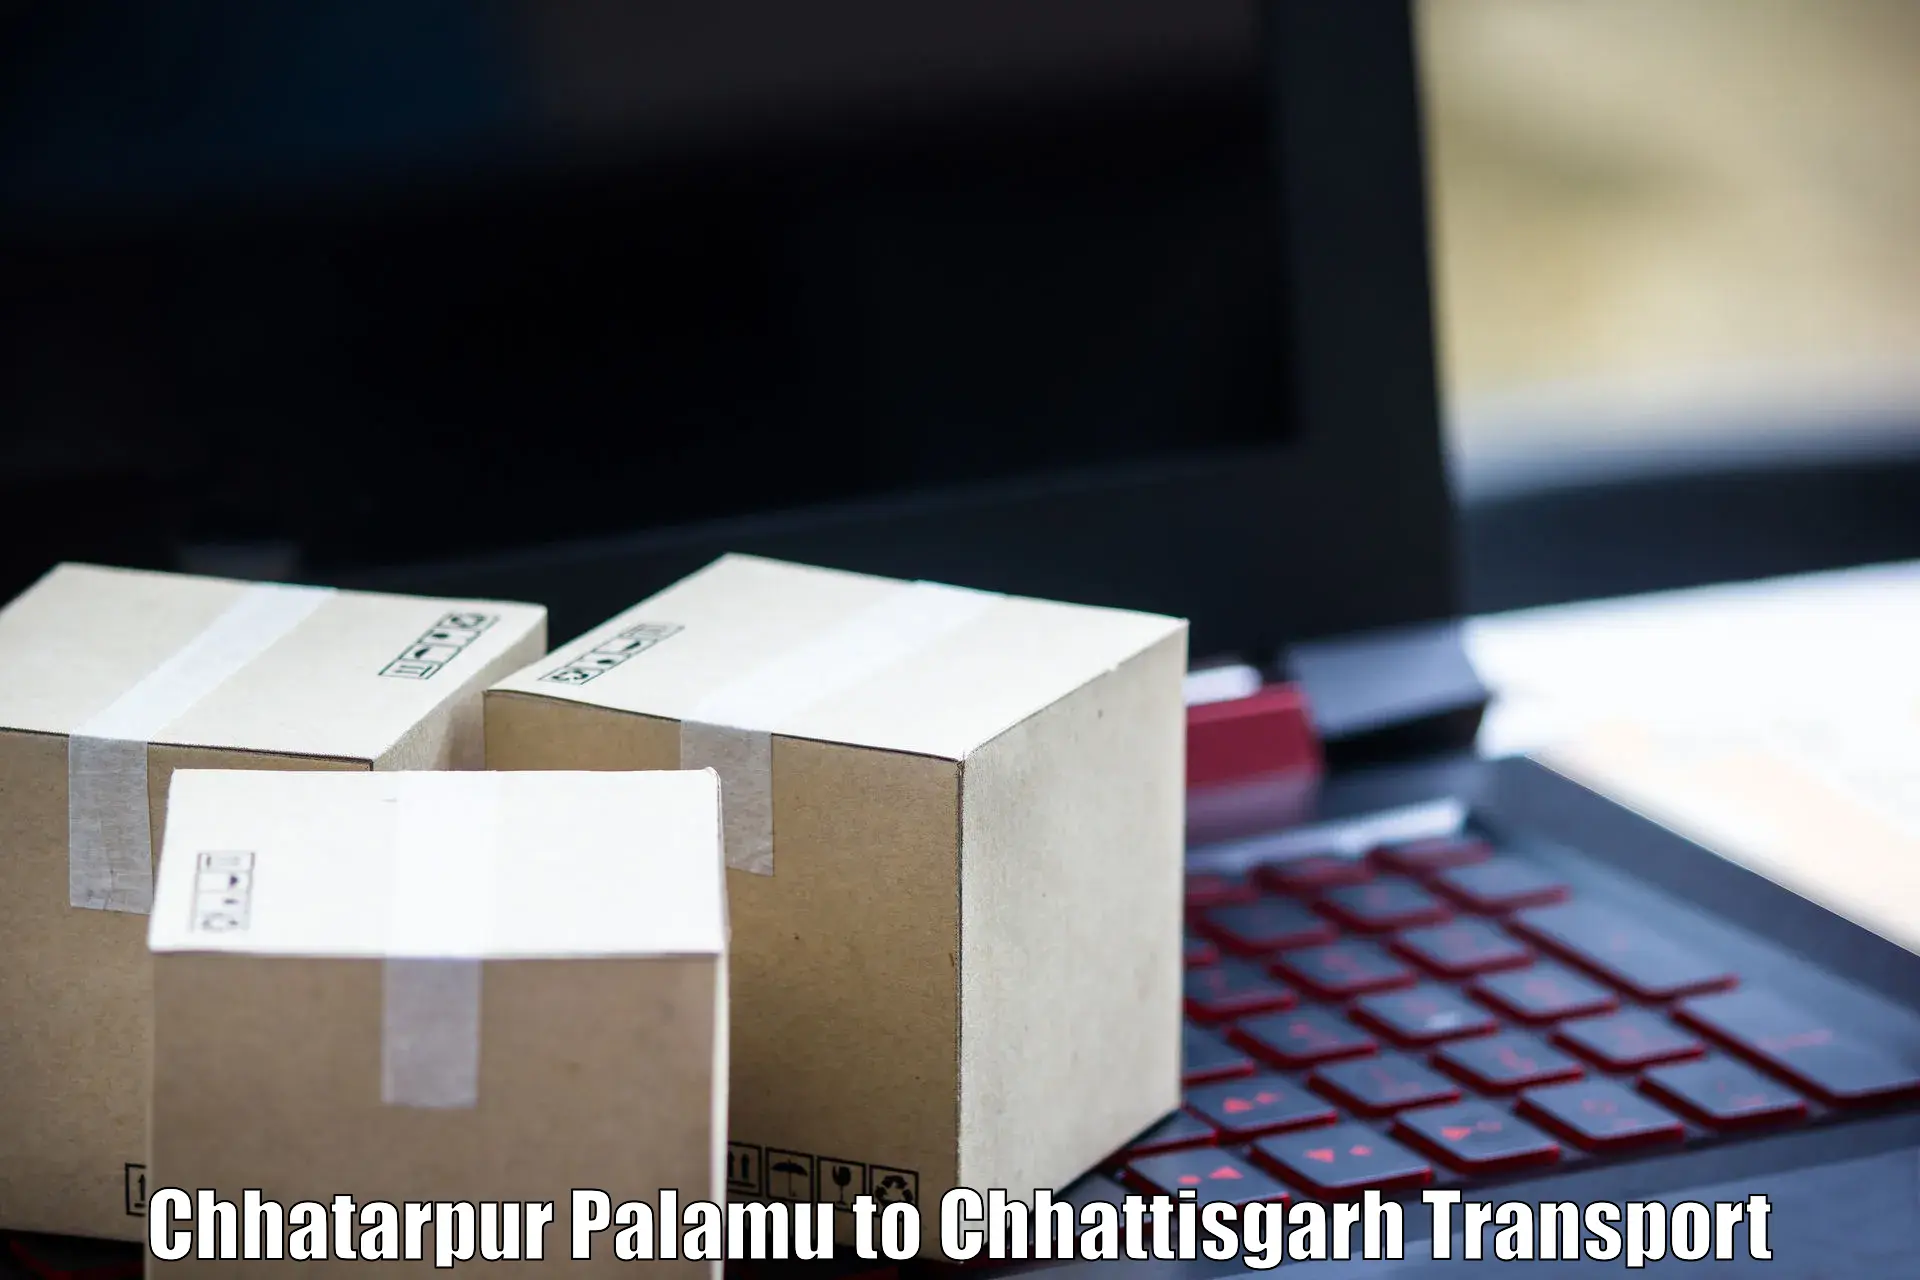 International cargo transportation services Chhatarpur Palamu to Akaltara